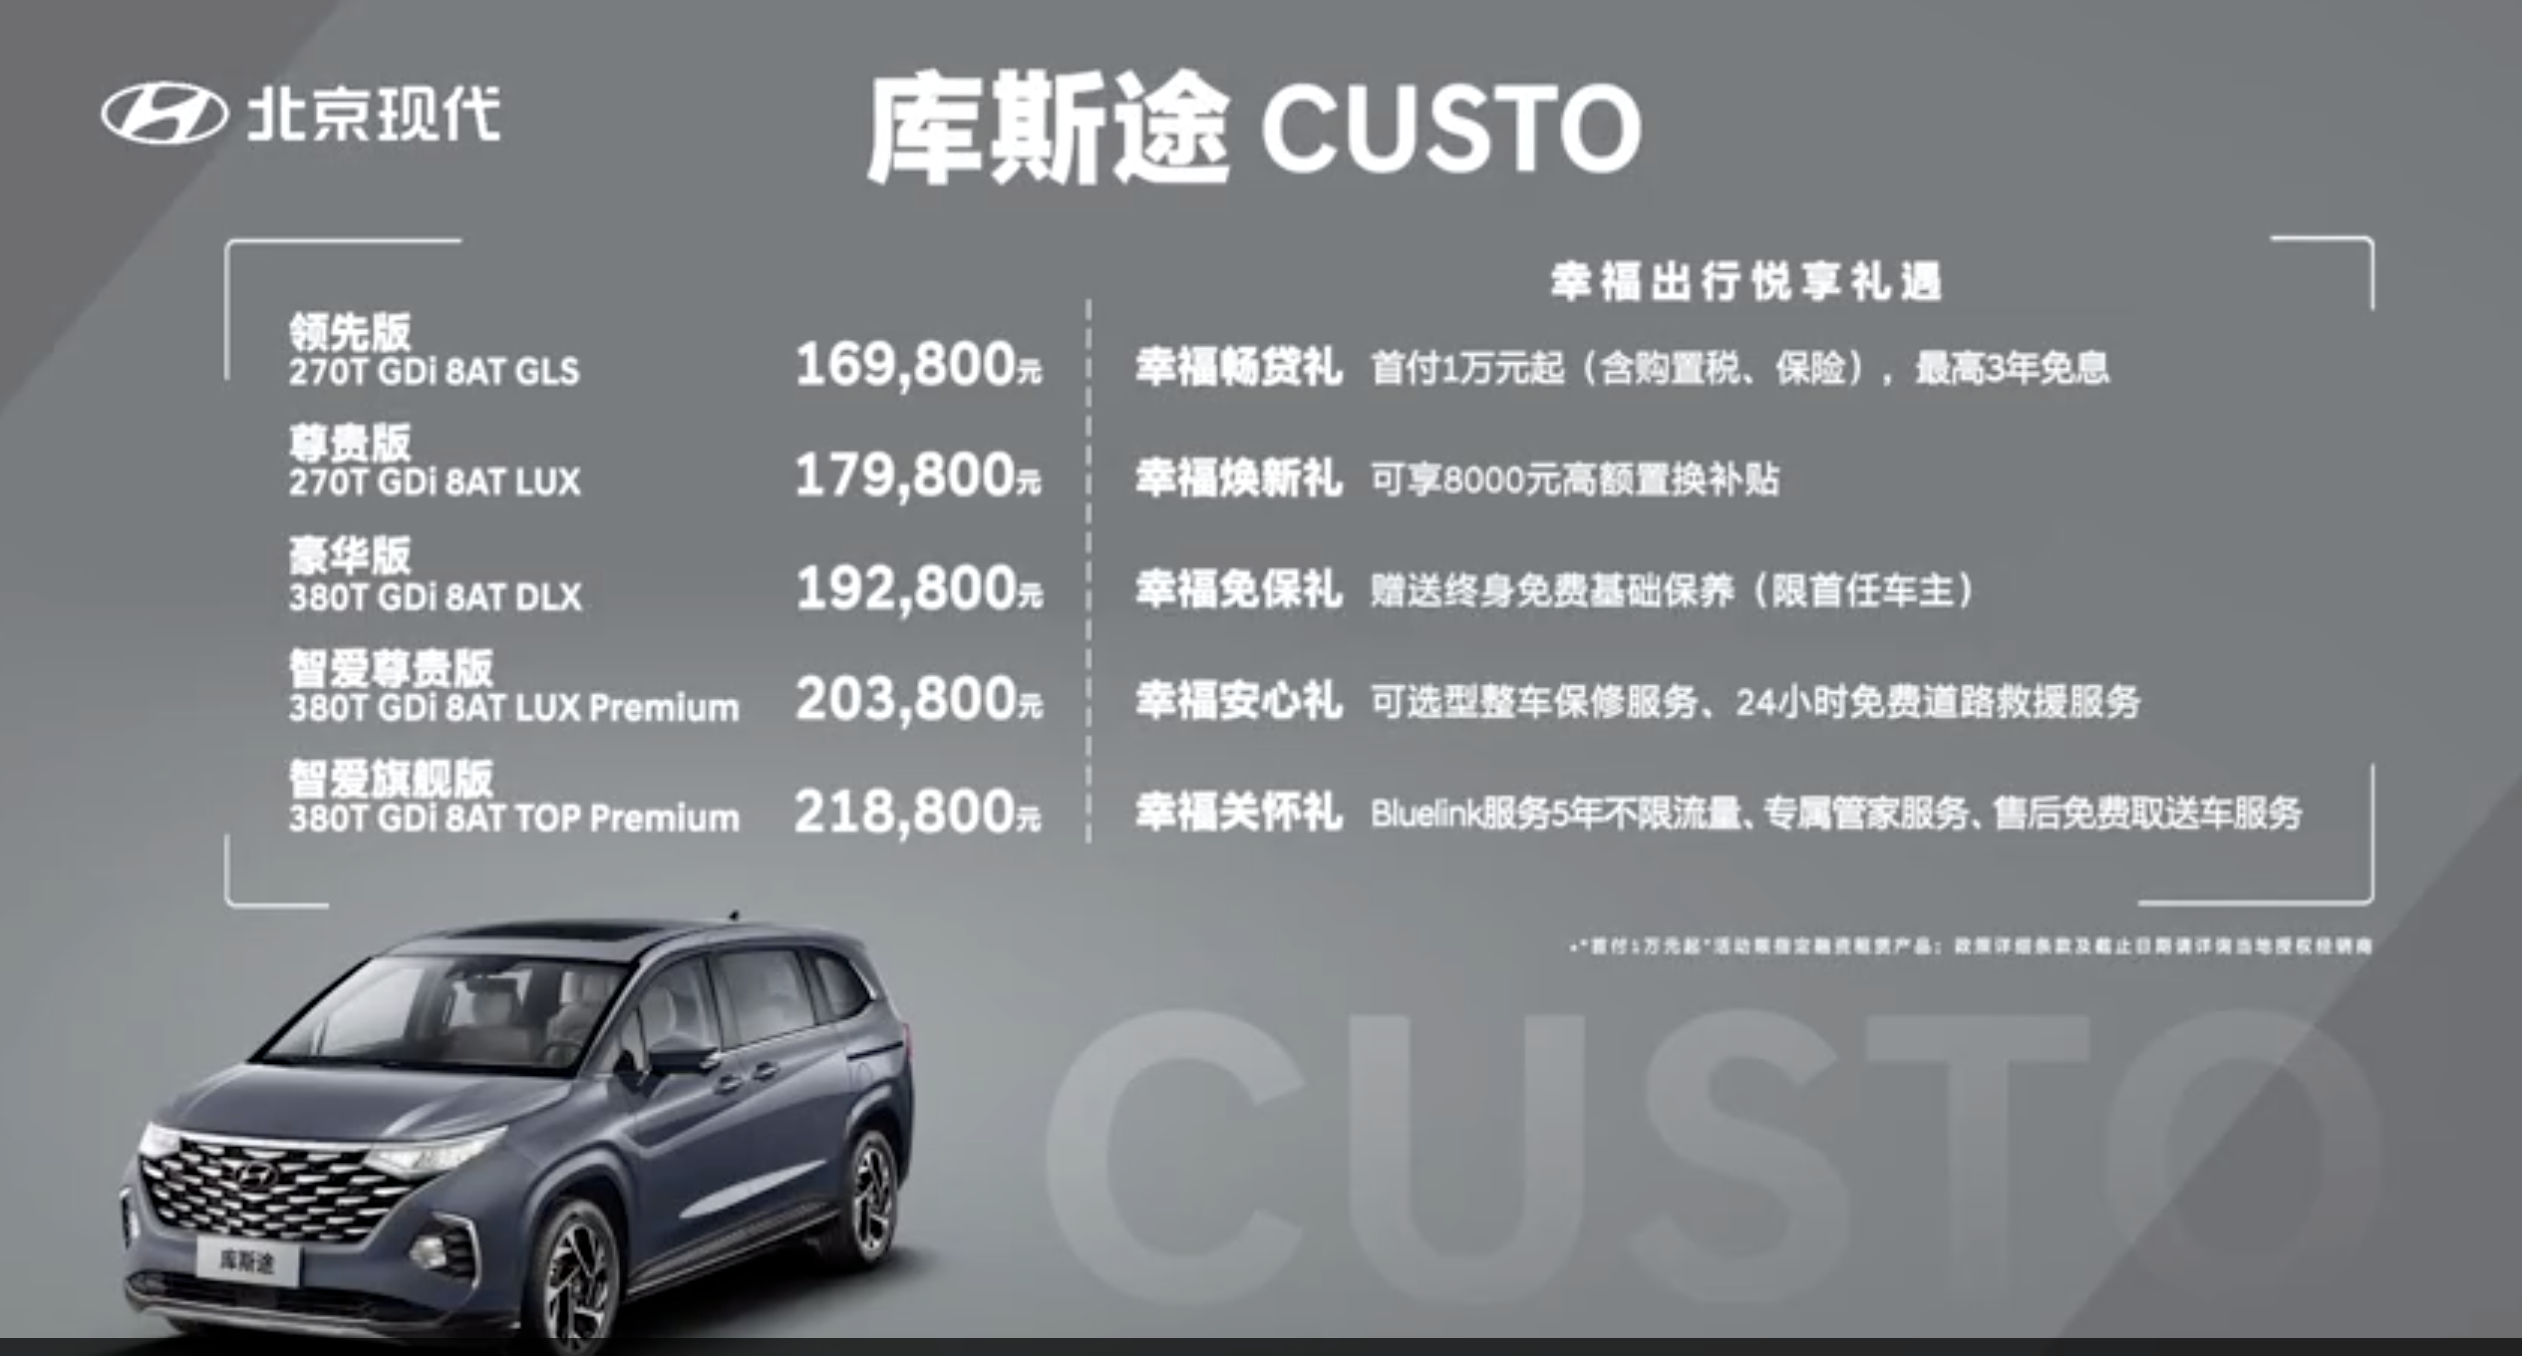 长安马自达CX-30 EV正式上市；福特EVOS正式启动预售